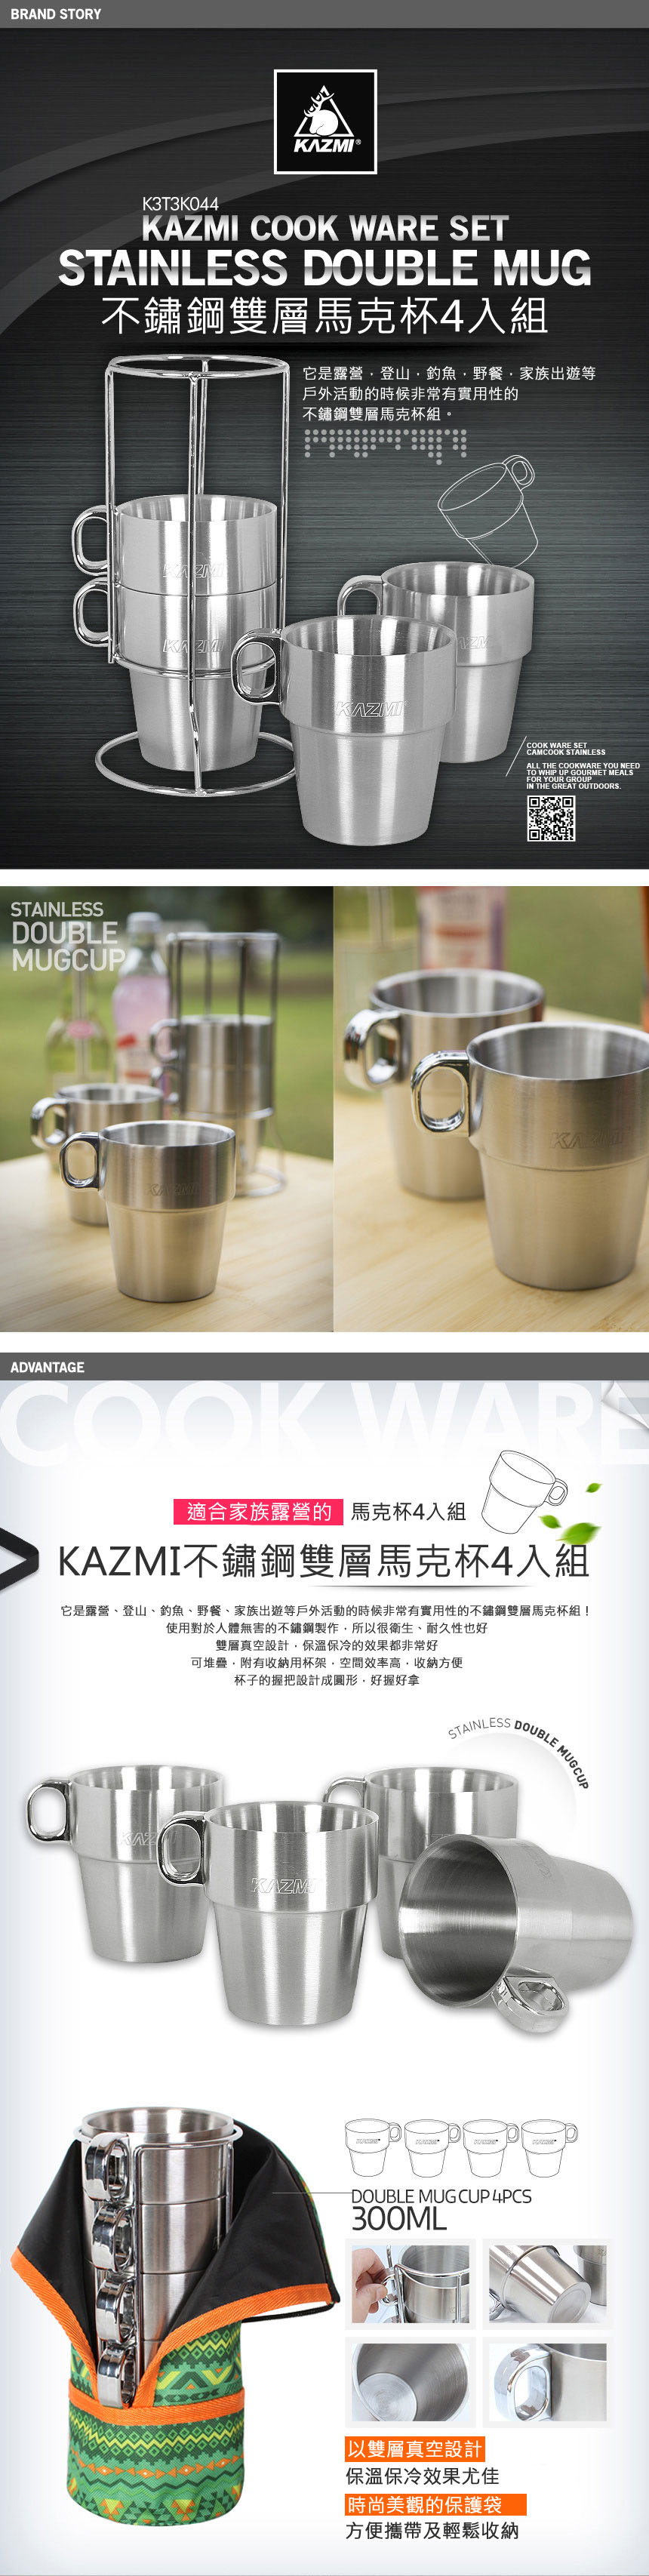 【山野賣客】KAZMI 不鏽鋼雙層馬克杯4入組(綠色) K3T3K044GN